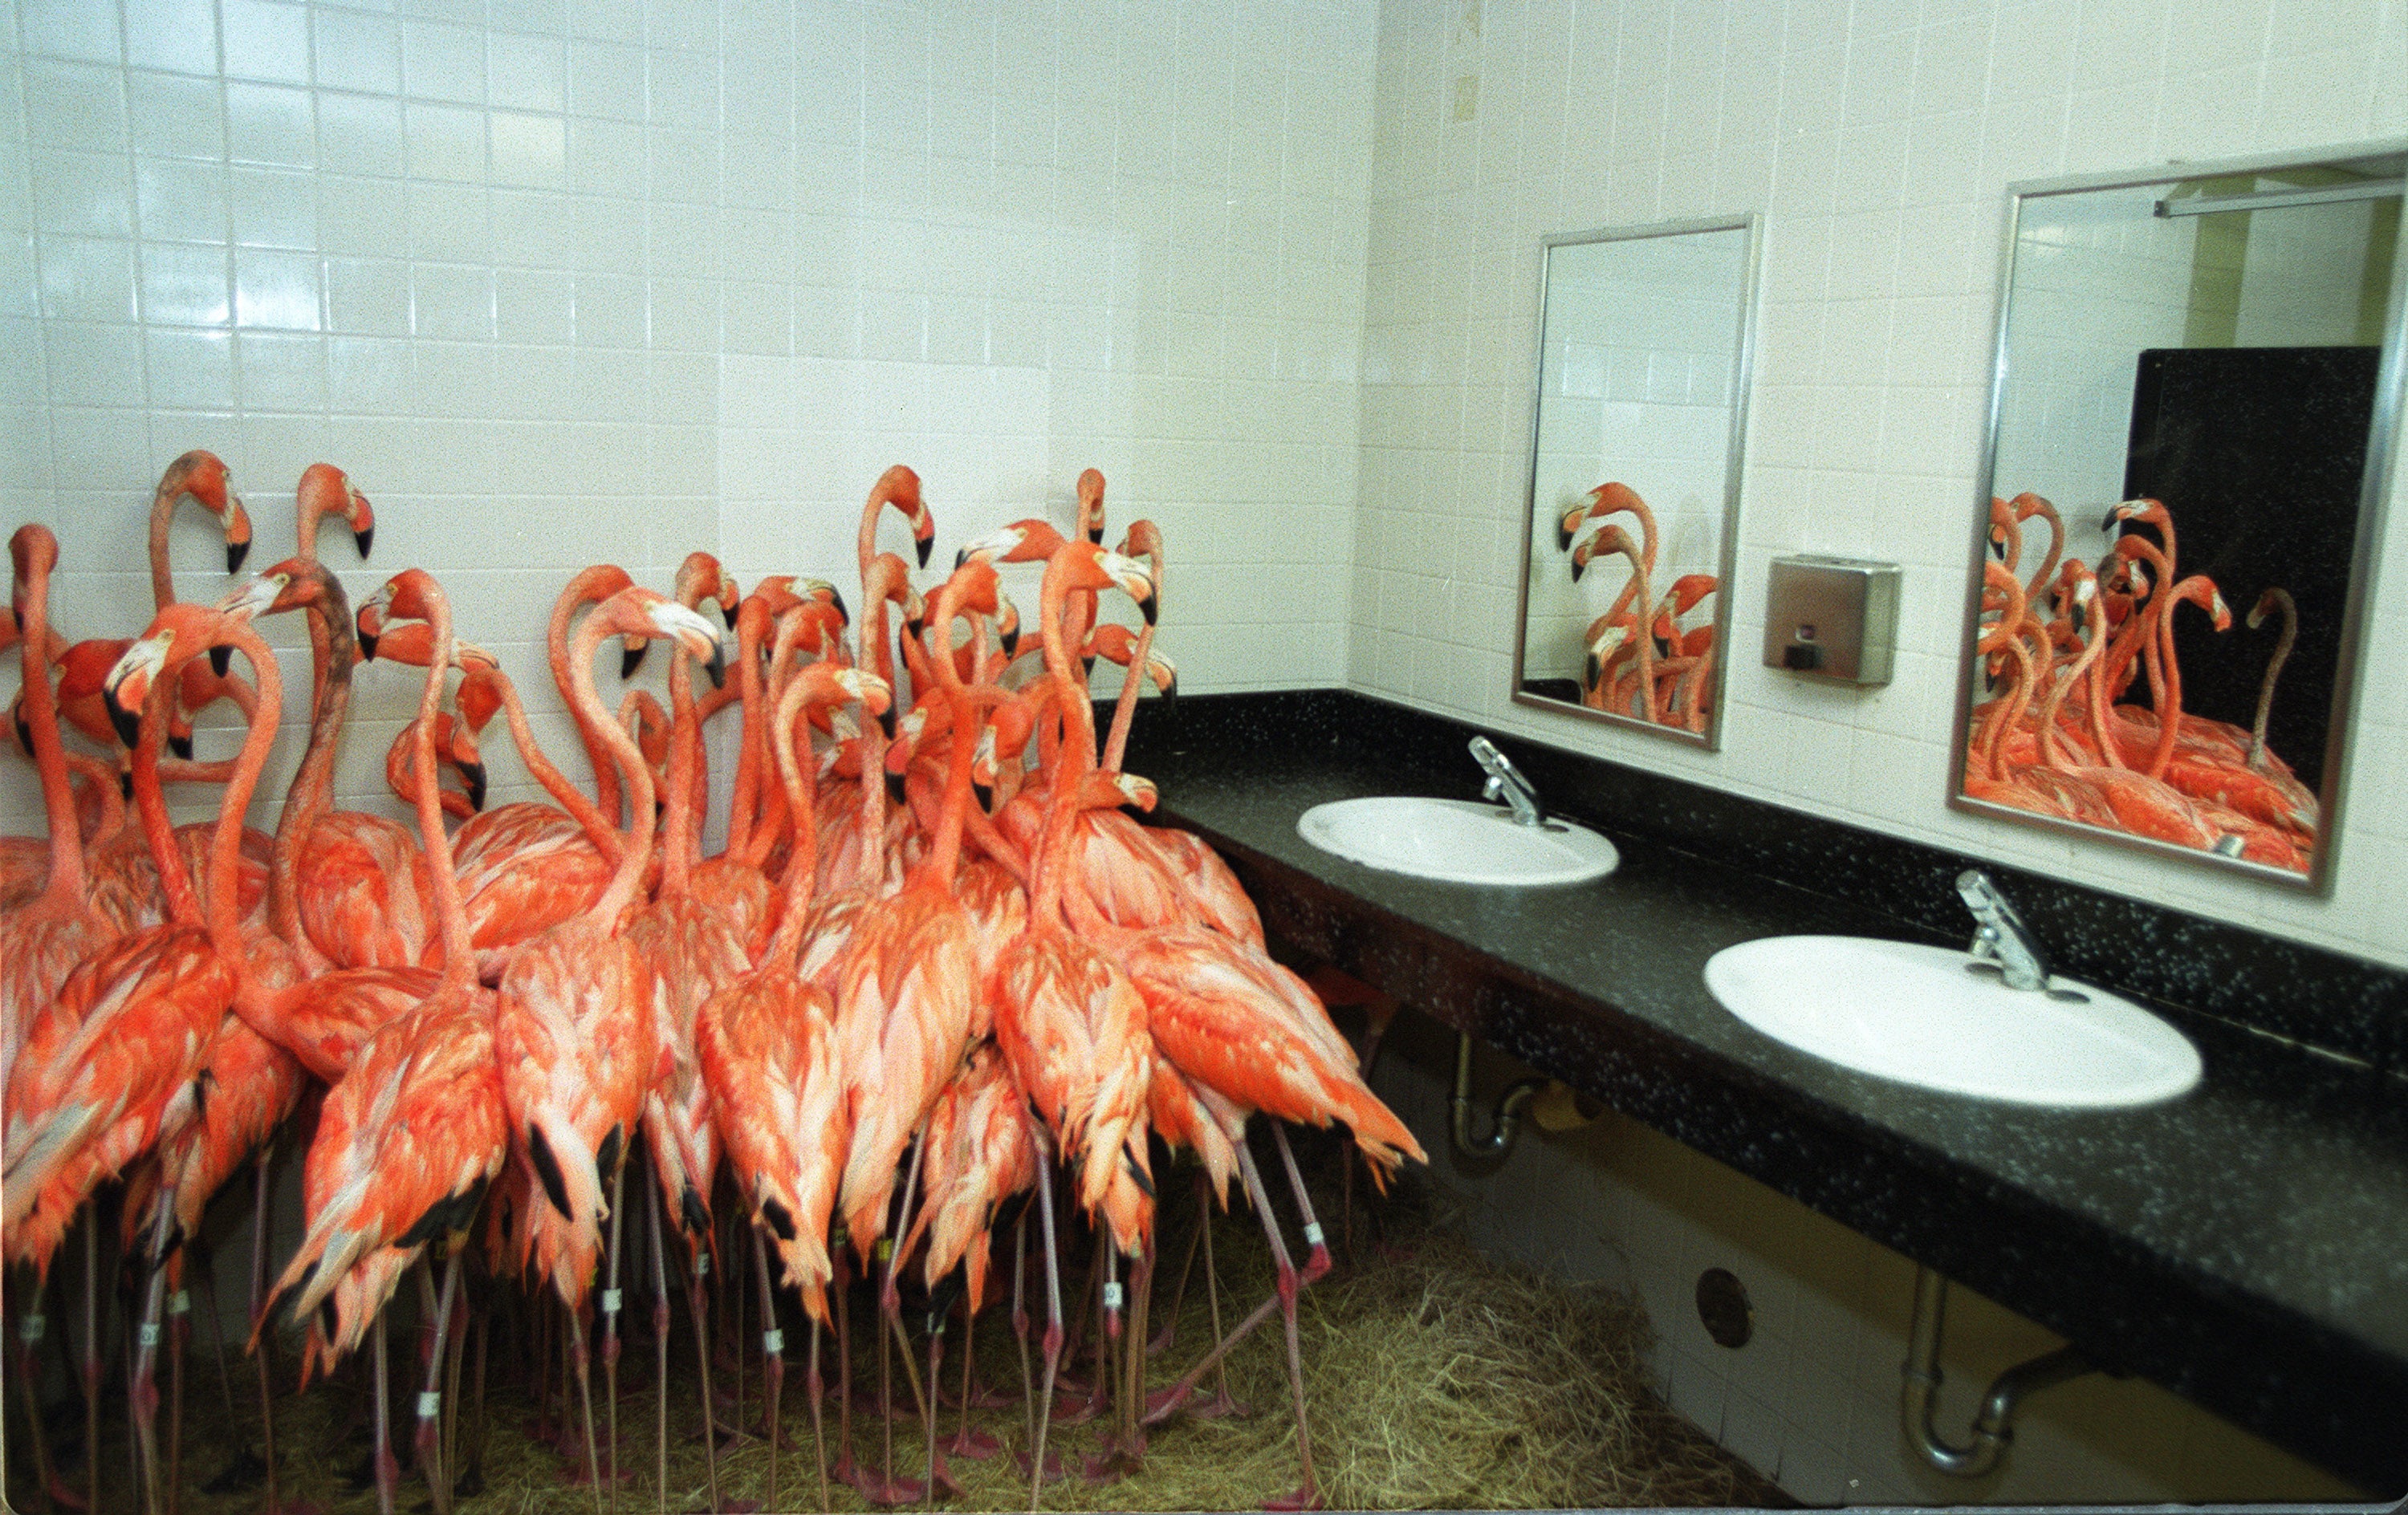 Flamingos in a public bathroom.